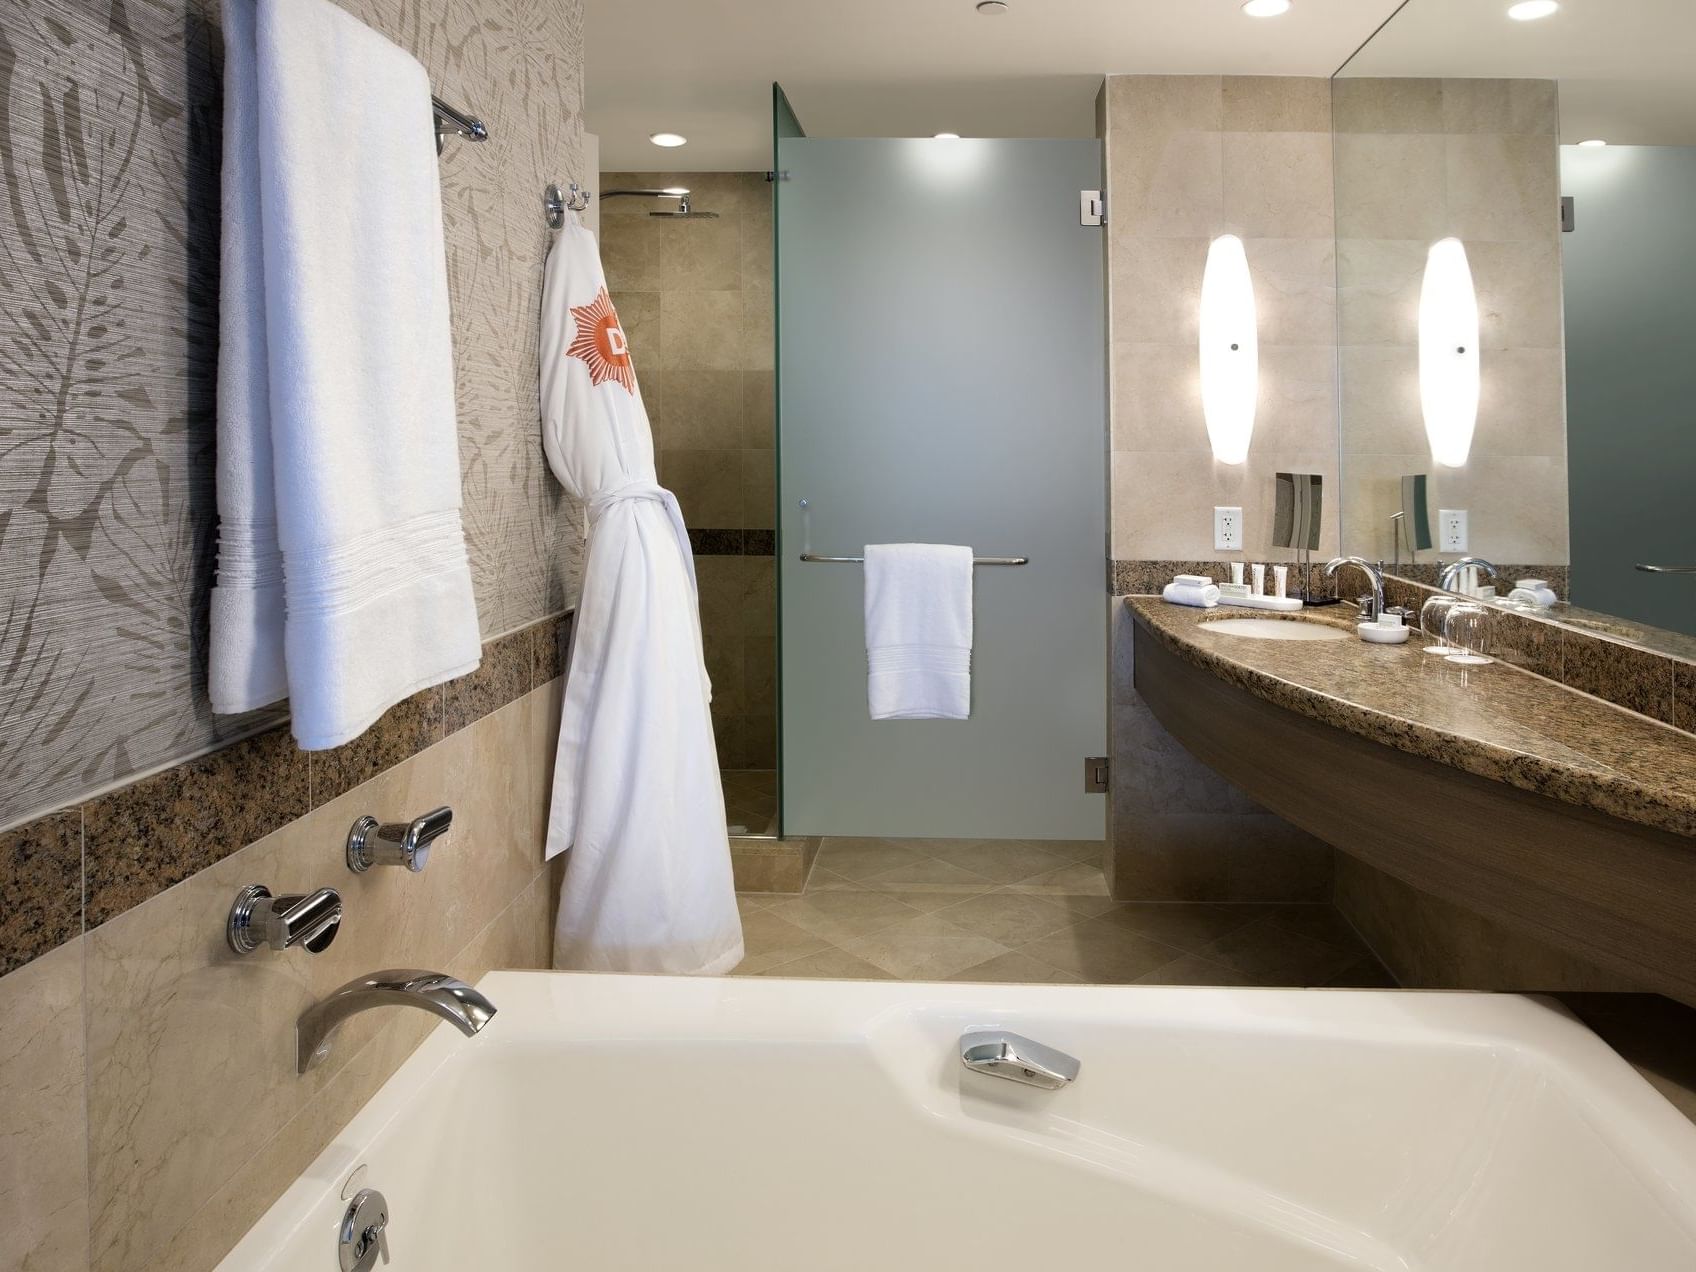 Ocean view full bathroom with a tub at Diplomat Resort